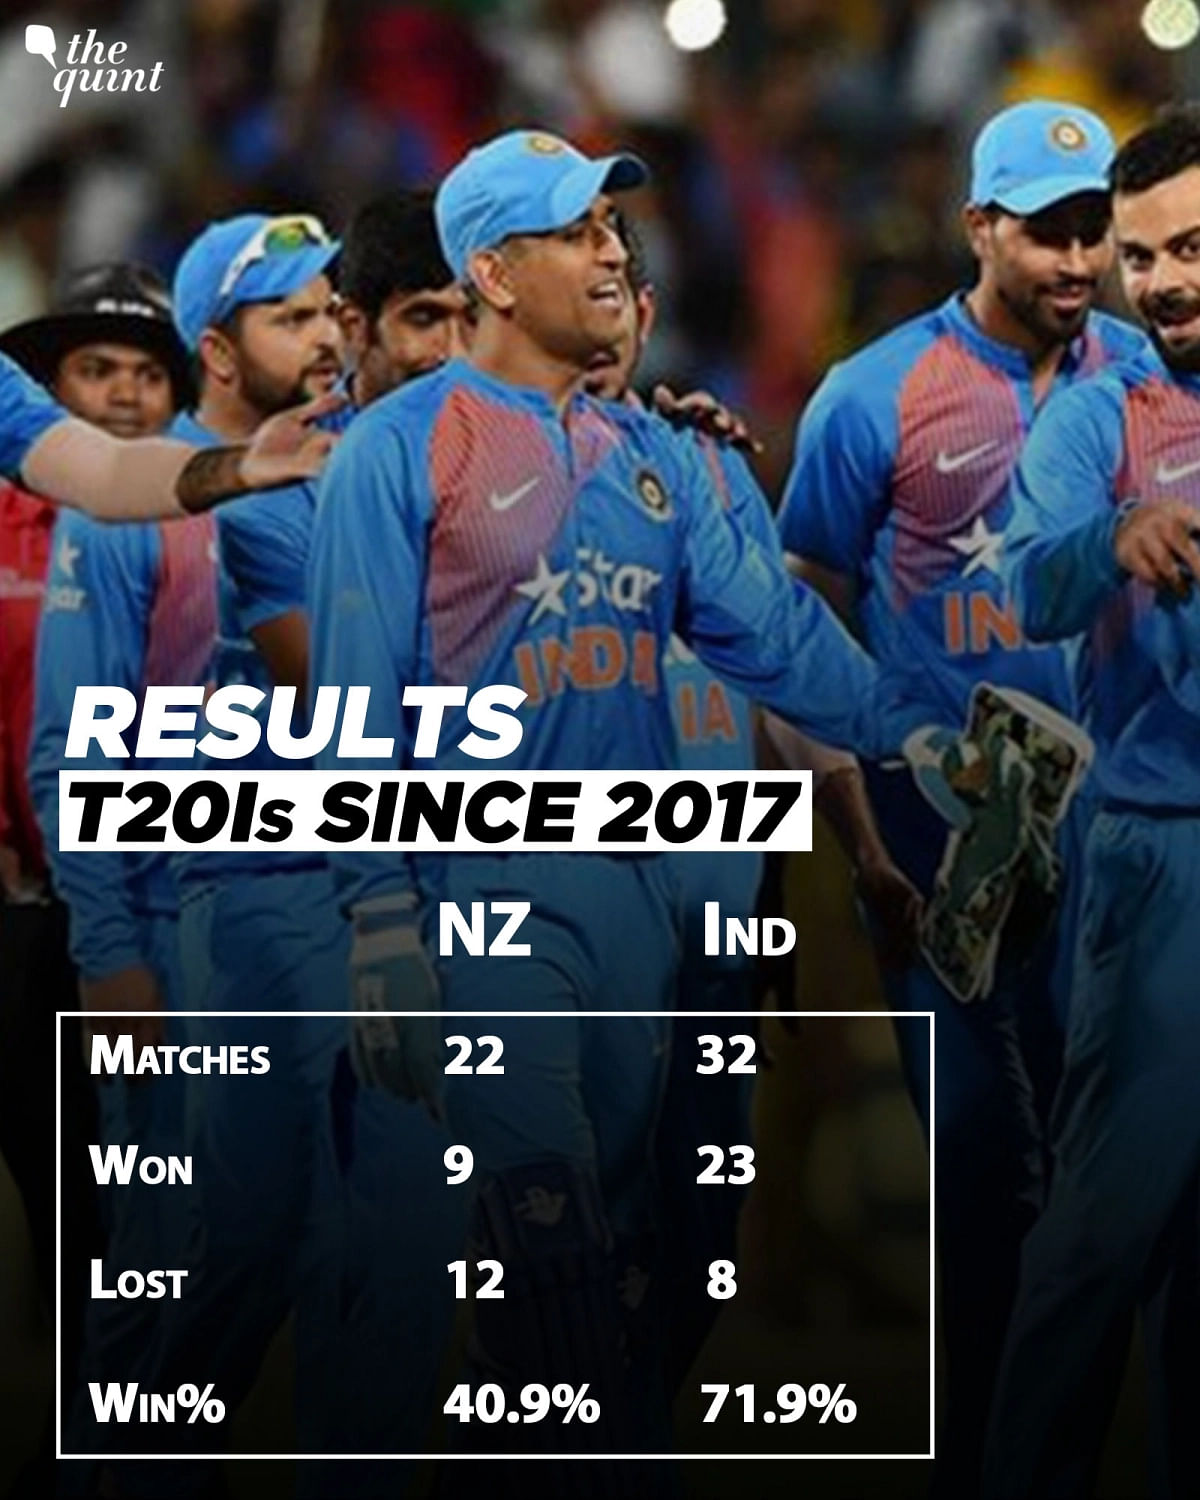 पुराने रिकॉर्ड की बात करें तो भारत के खिलाफ अगर सबसे छोटे फॉर्मेट में कोई टीम सबसे सफल रही है तो वो न्यूजीलैंड है.